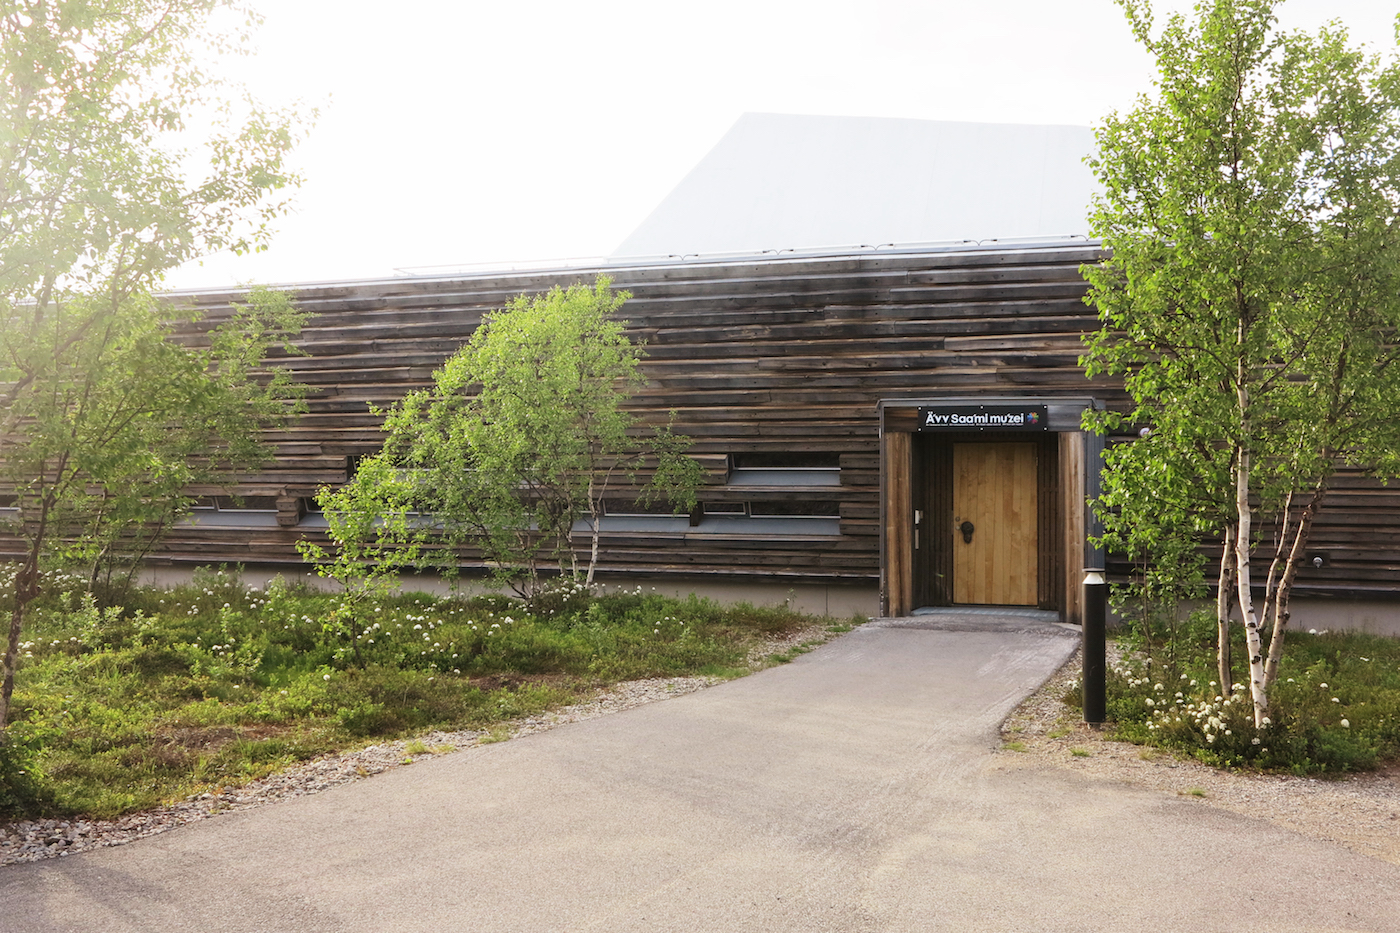 PIR II: Museumsbygningen er tegnet av Pir II arkitektkontor og sto ferdig i 2009. FOTO: Ä’VV SKOLTESAMISK MUSEUM